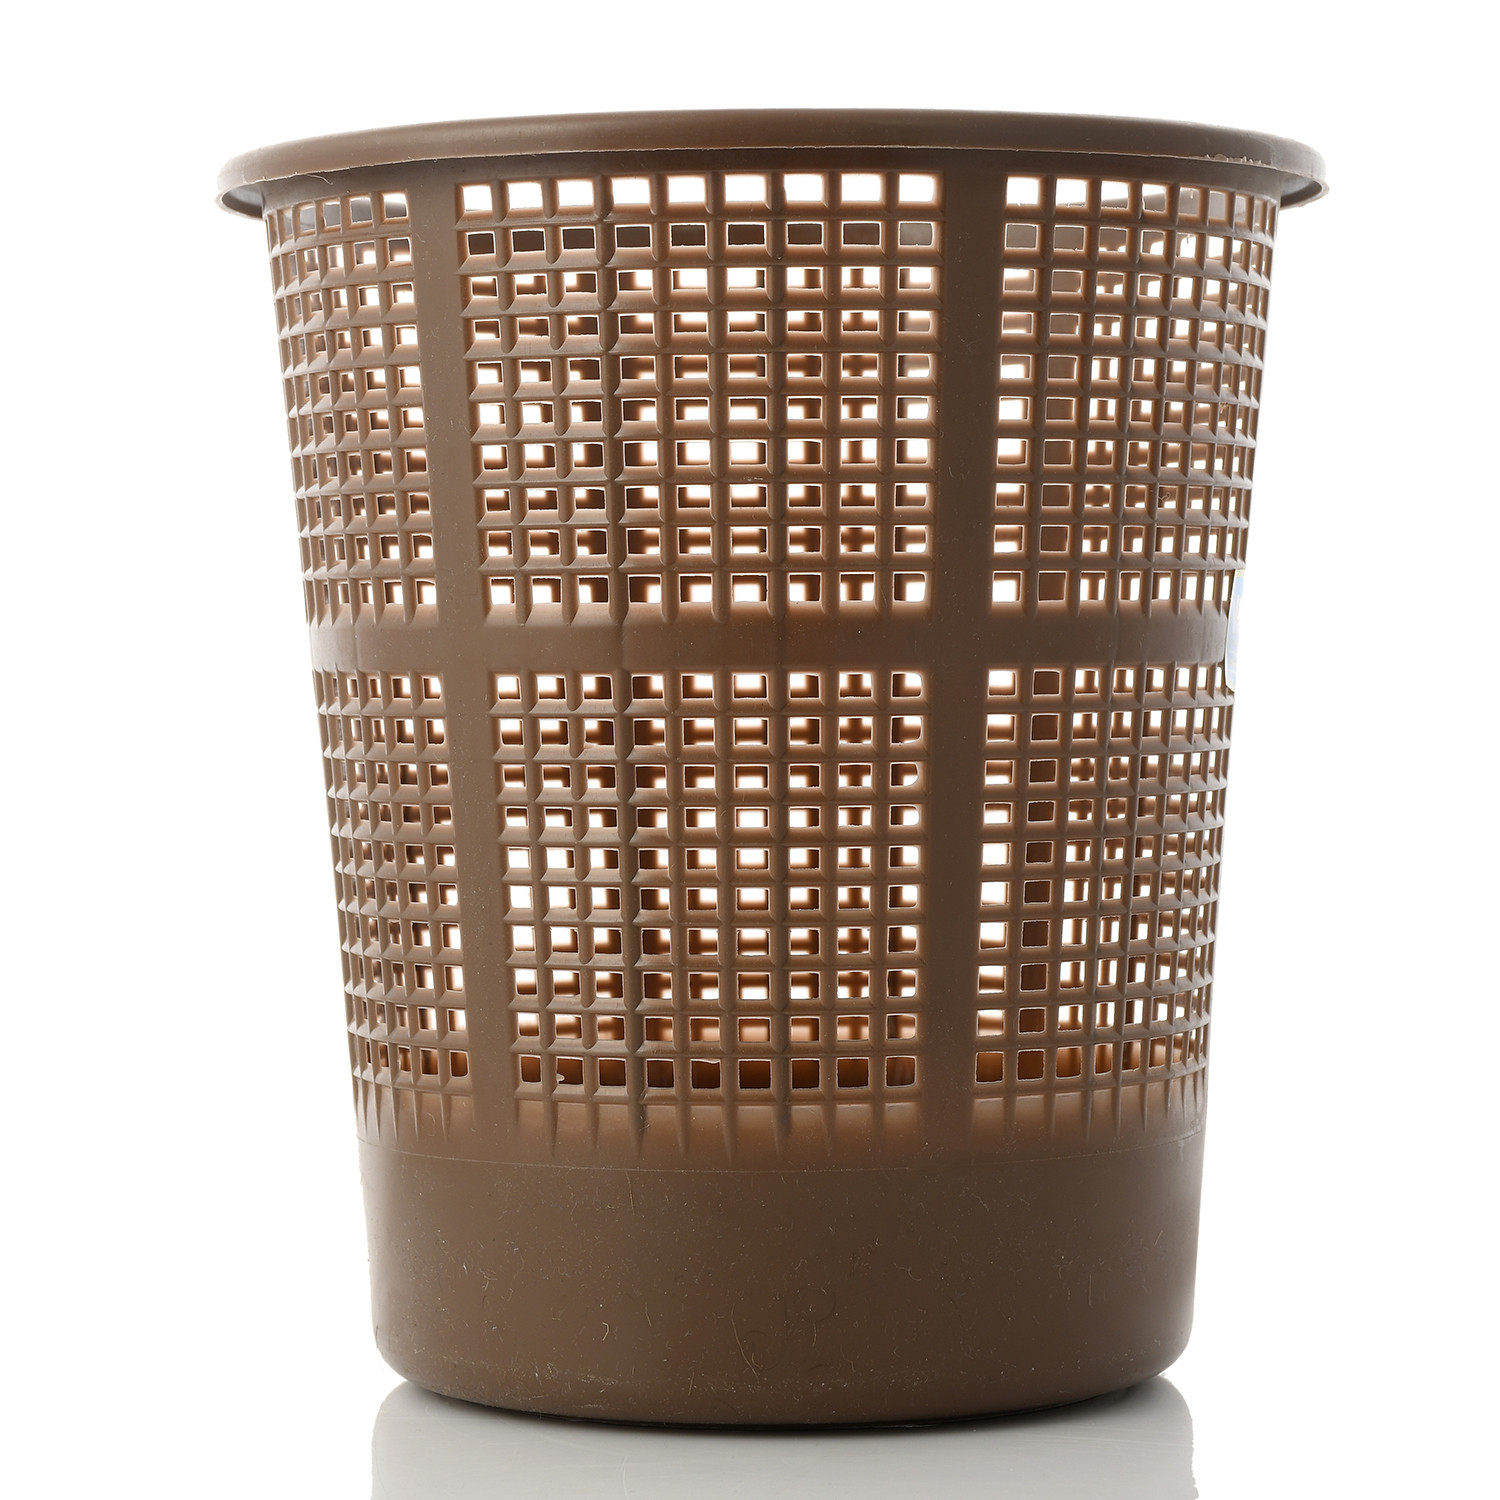 Kuber Industries Plastic Mesh Dustbin Garbage Bin for Office use, School, Bedroom,Kids Room, Home, Multi Purpose,5 Liters (Brown)